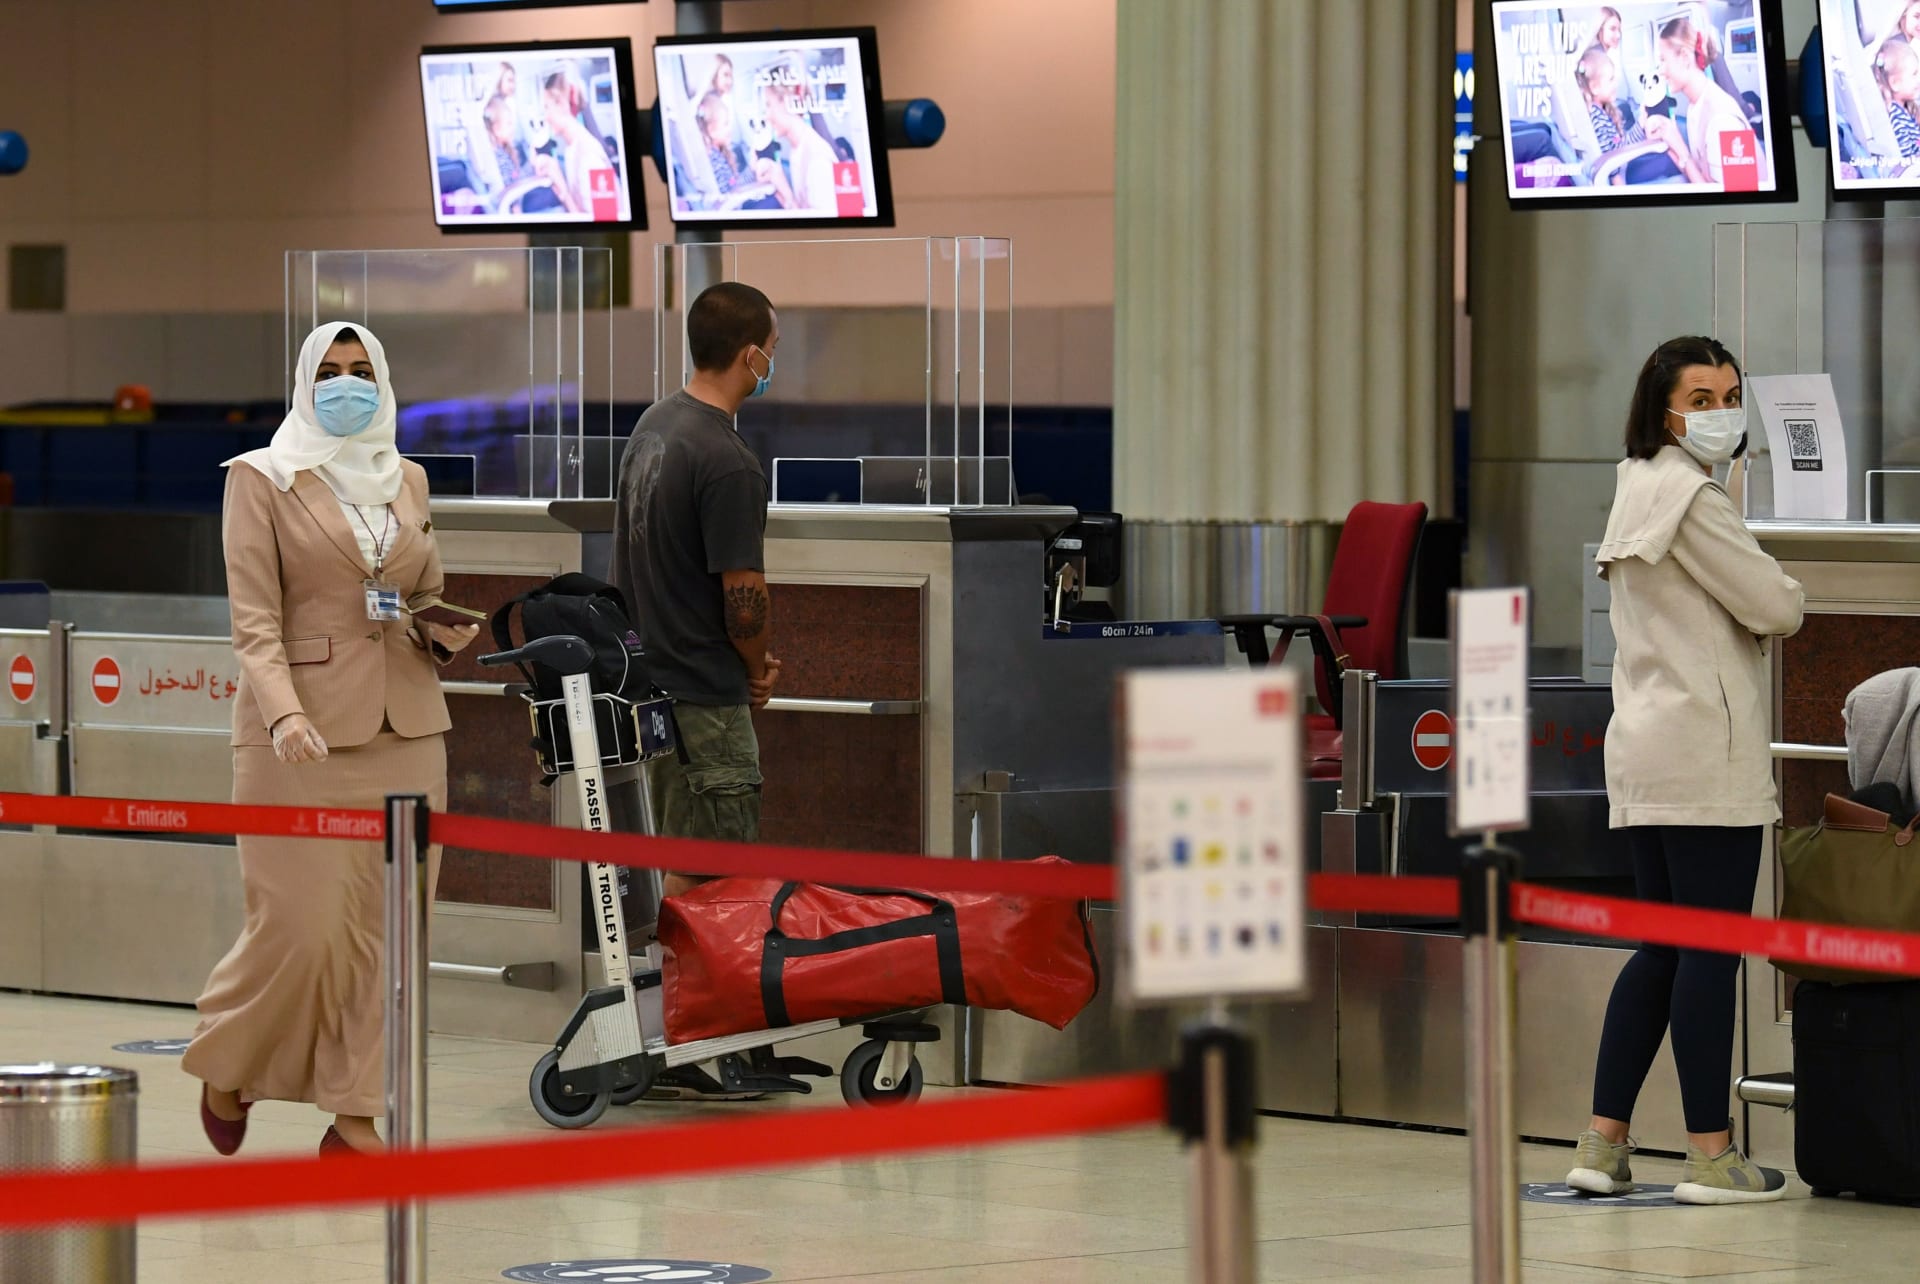 دبي تحدد مواعيد وإجراءات استقبال السائحين وسفر المواطنين والمقيمين